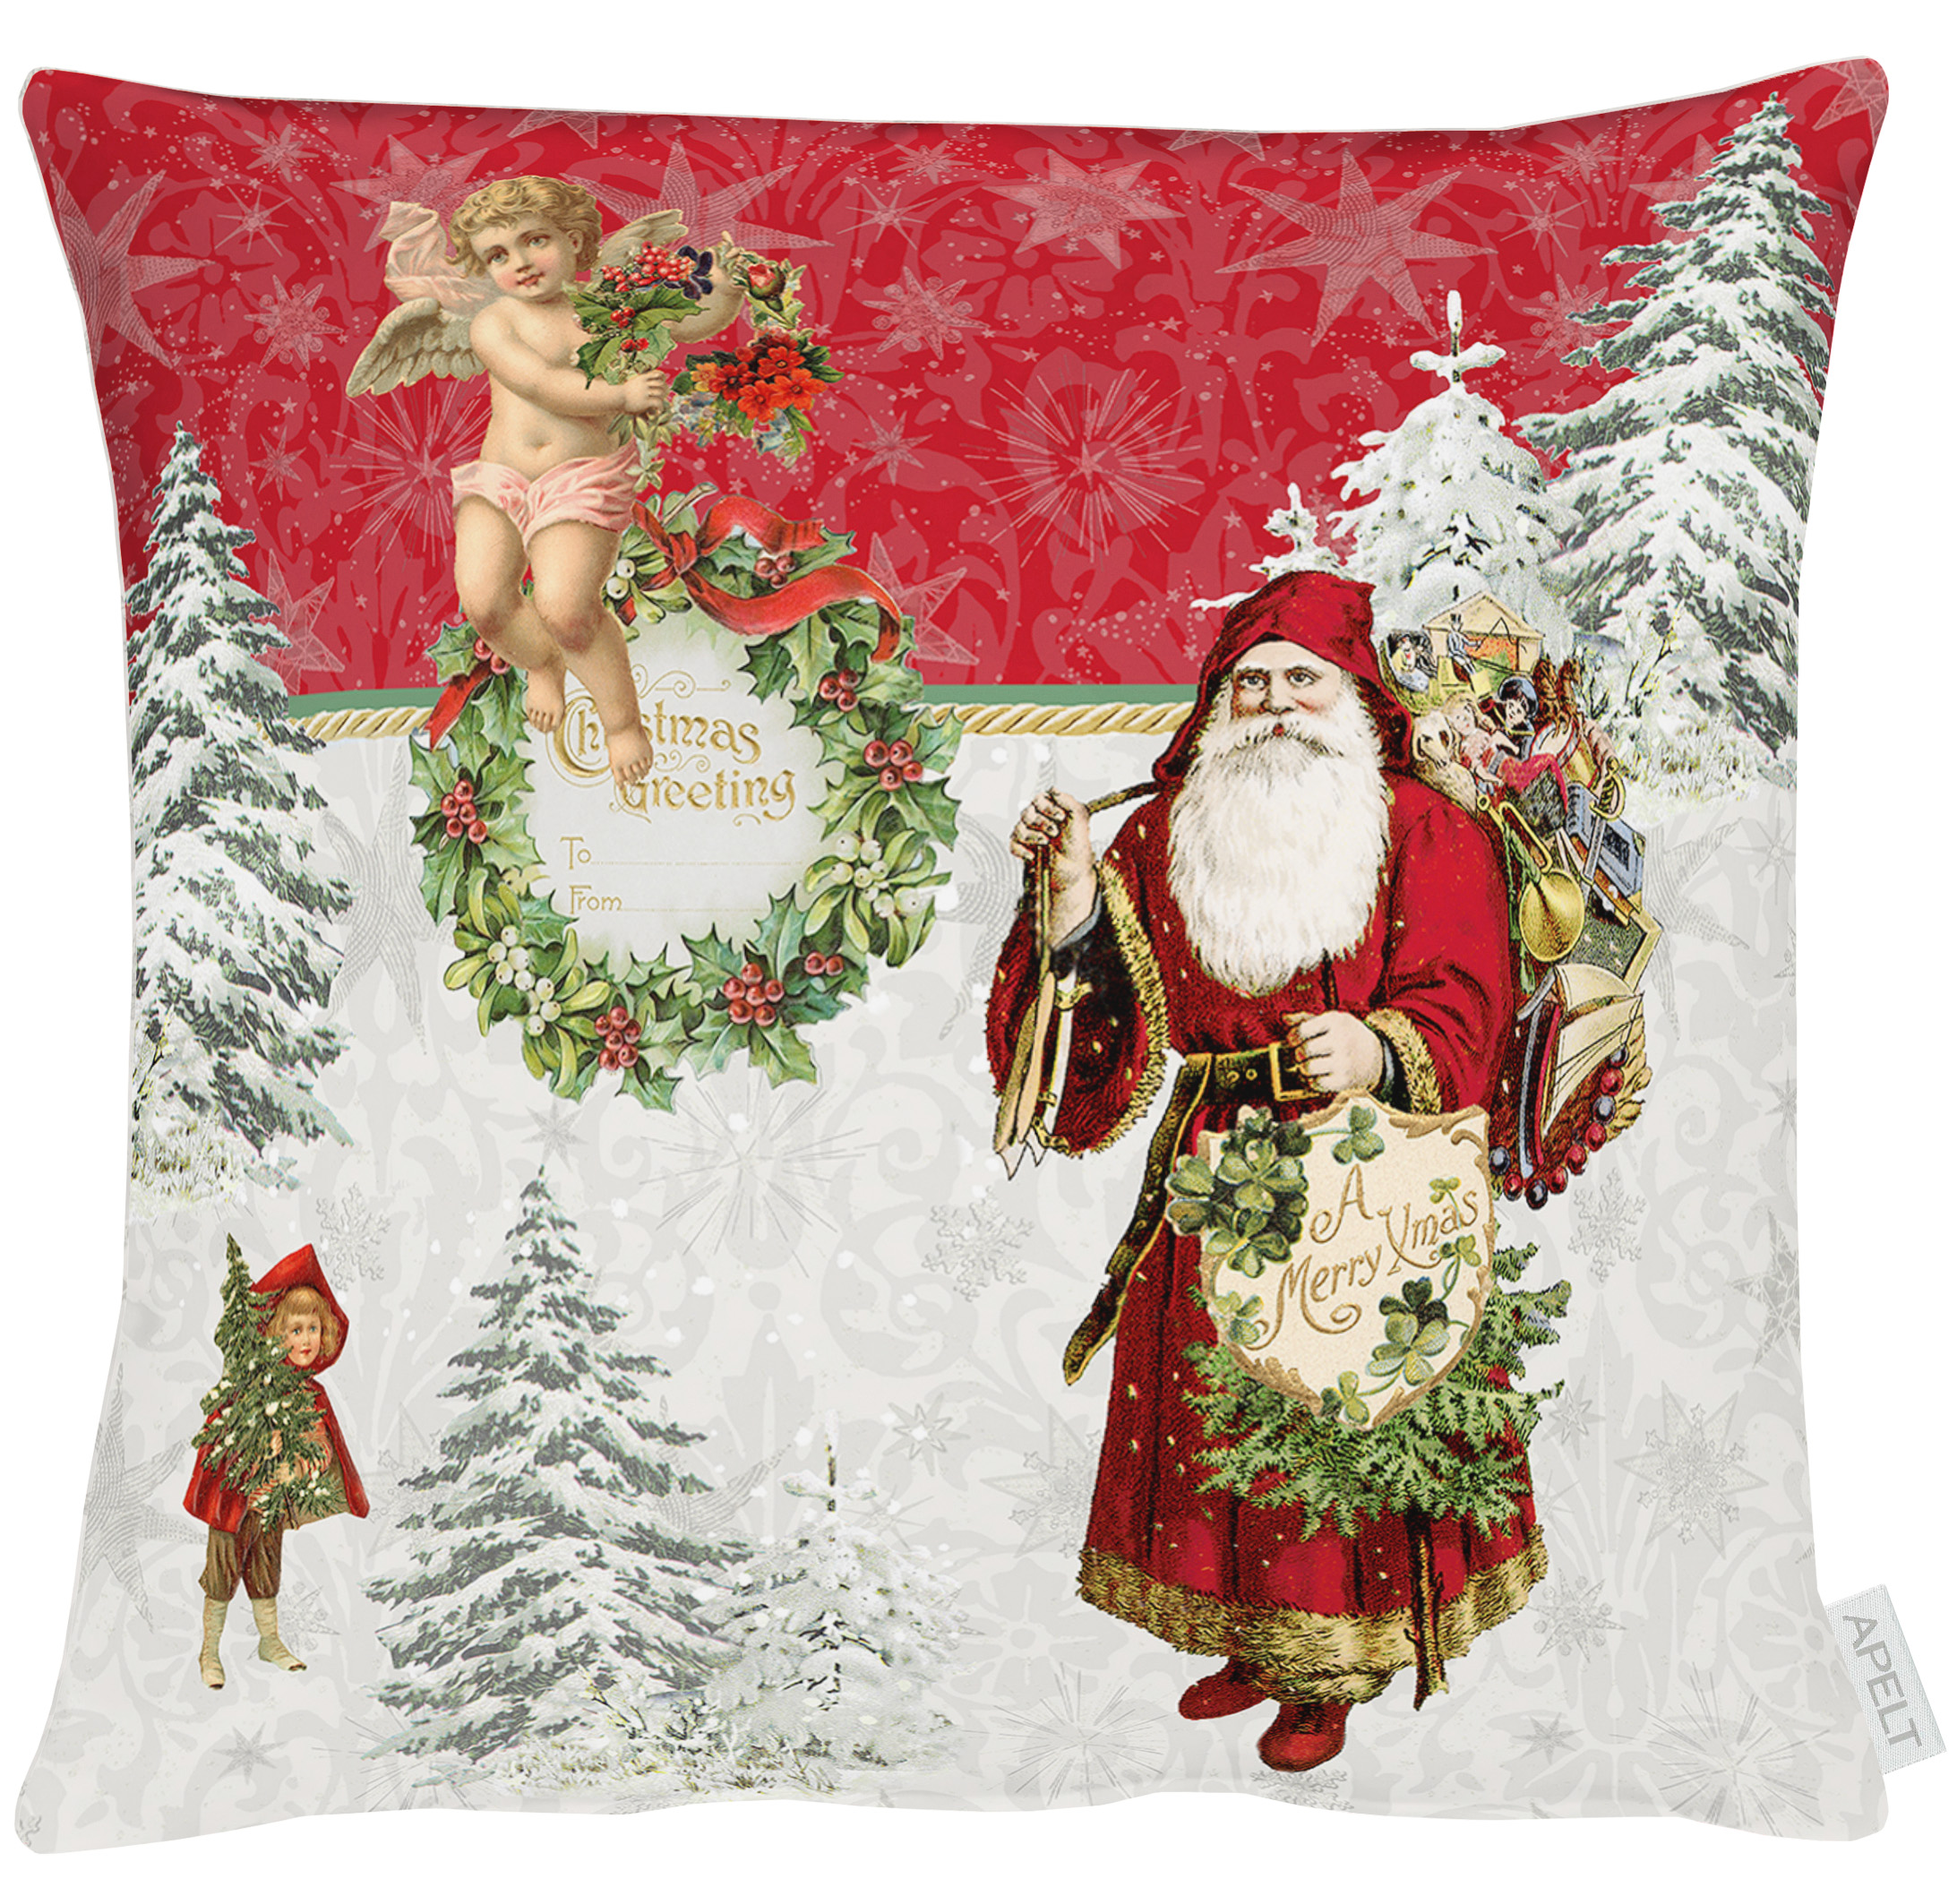 DAS LILA HAUS hat die Kissenhülle 9533 aus der Serie Winterwelt mit einem  nostalgischen Weihnachtsmann und verschneiten Tannen von APELT in 50 x 50  cm. | Das Lila Haus